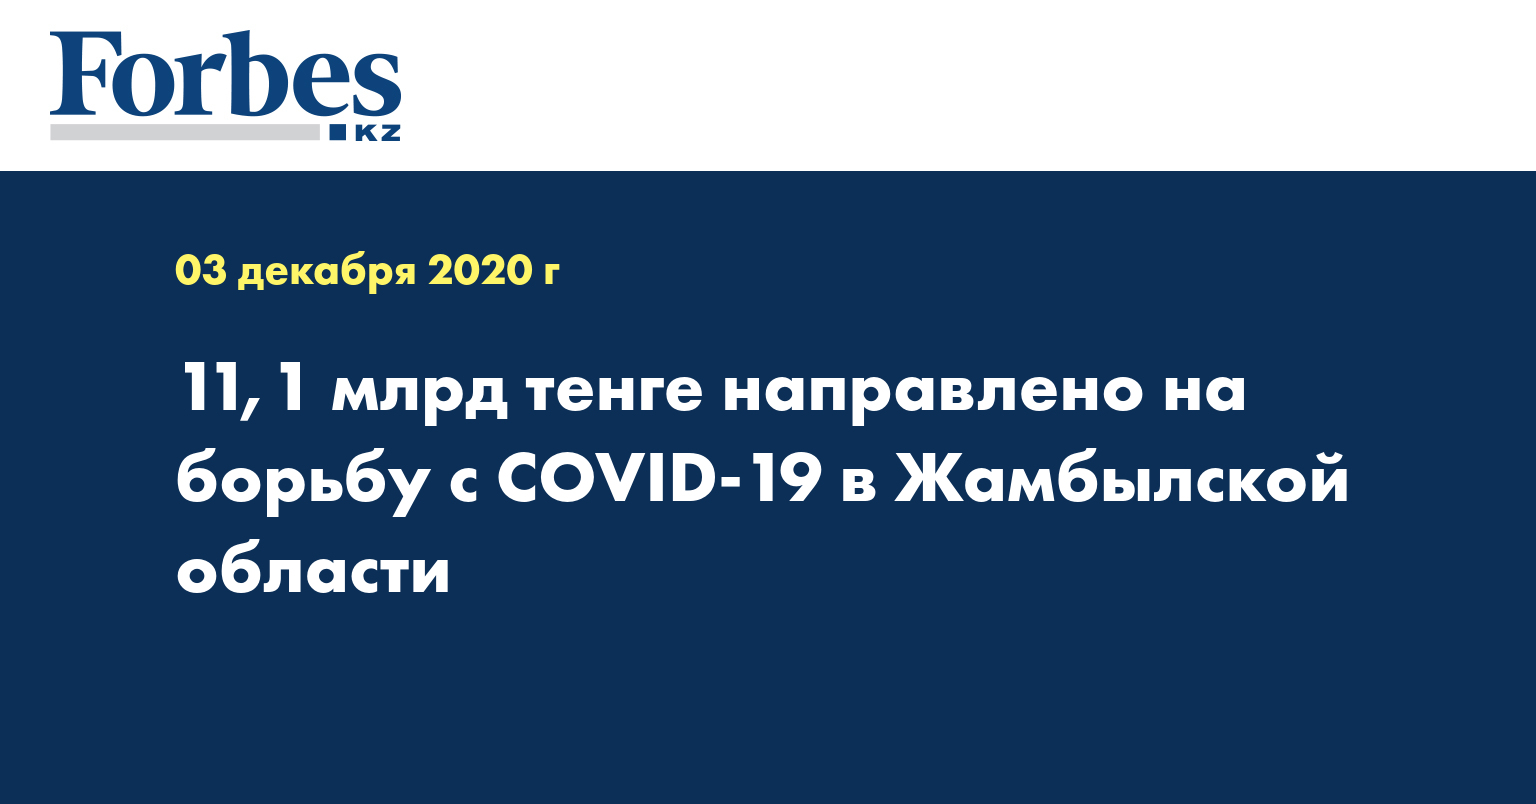 11,1 млрд тенге направлено на борьбу с COVID-19 в Жамбылской области